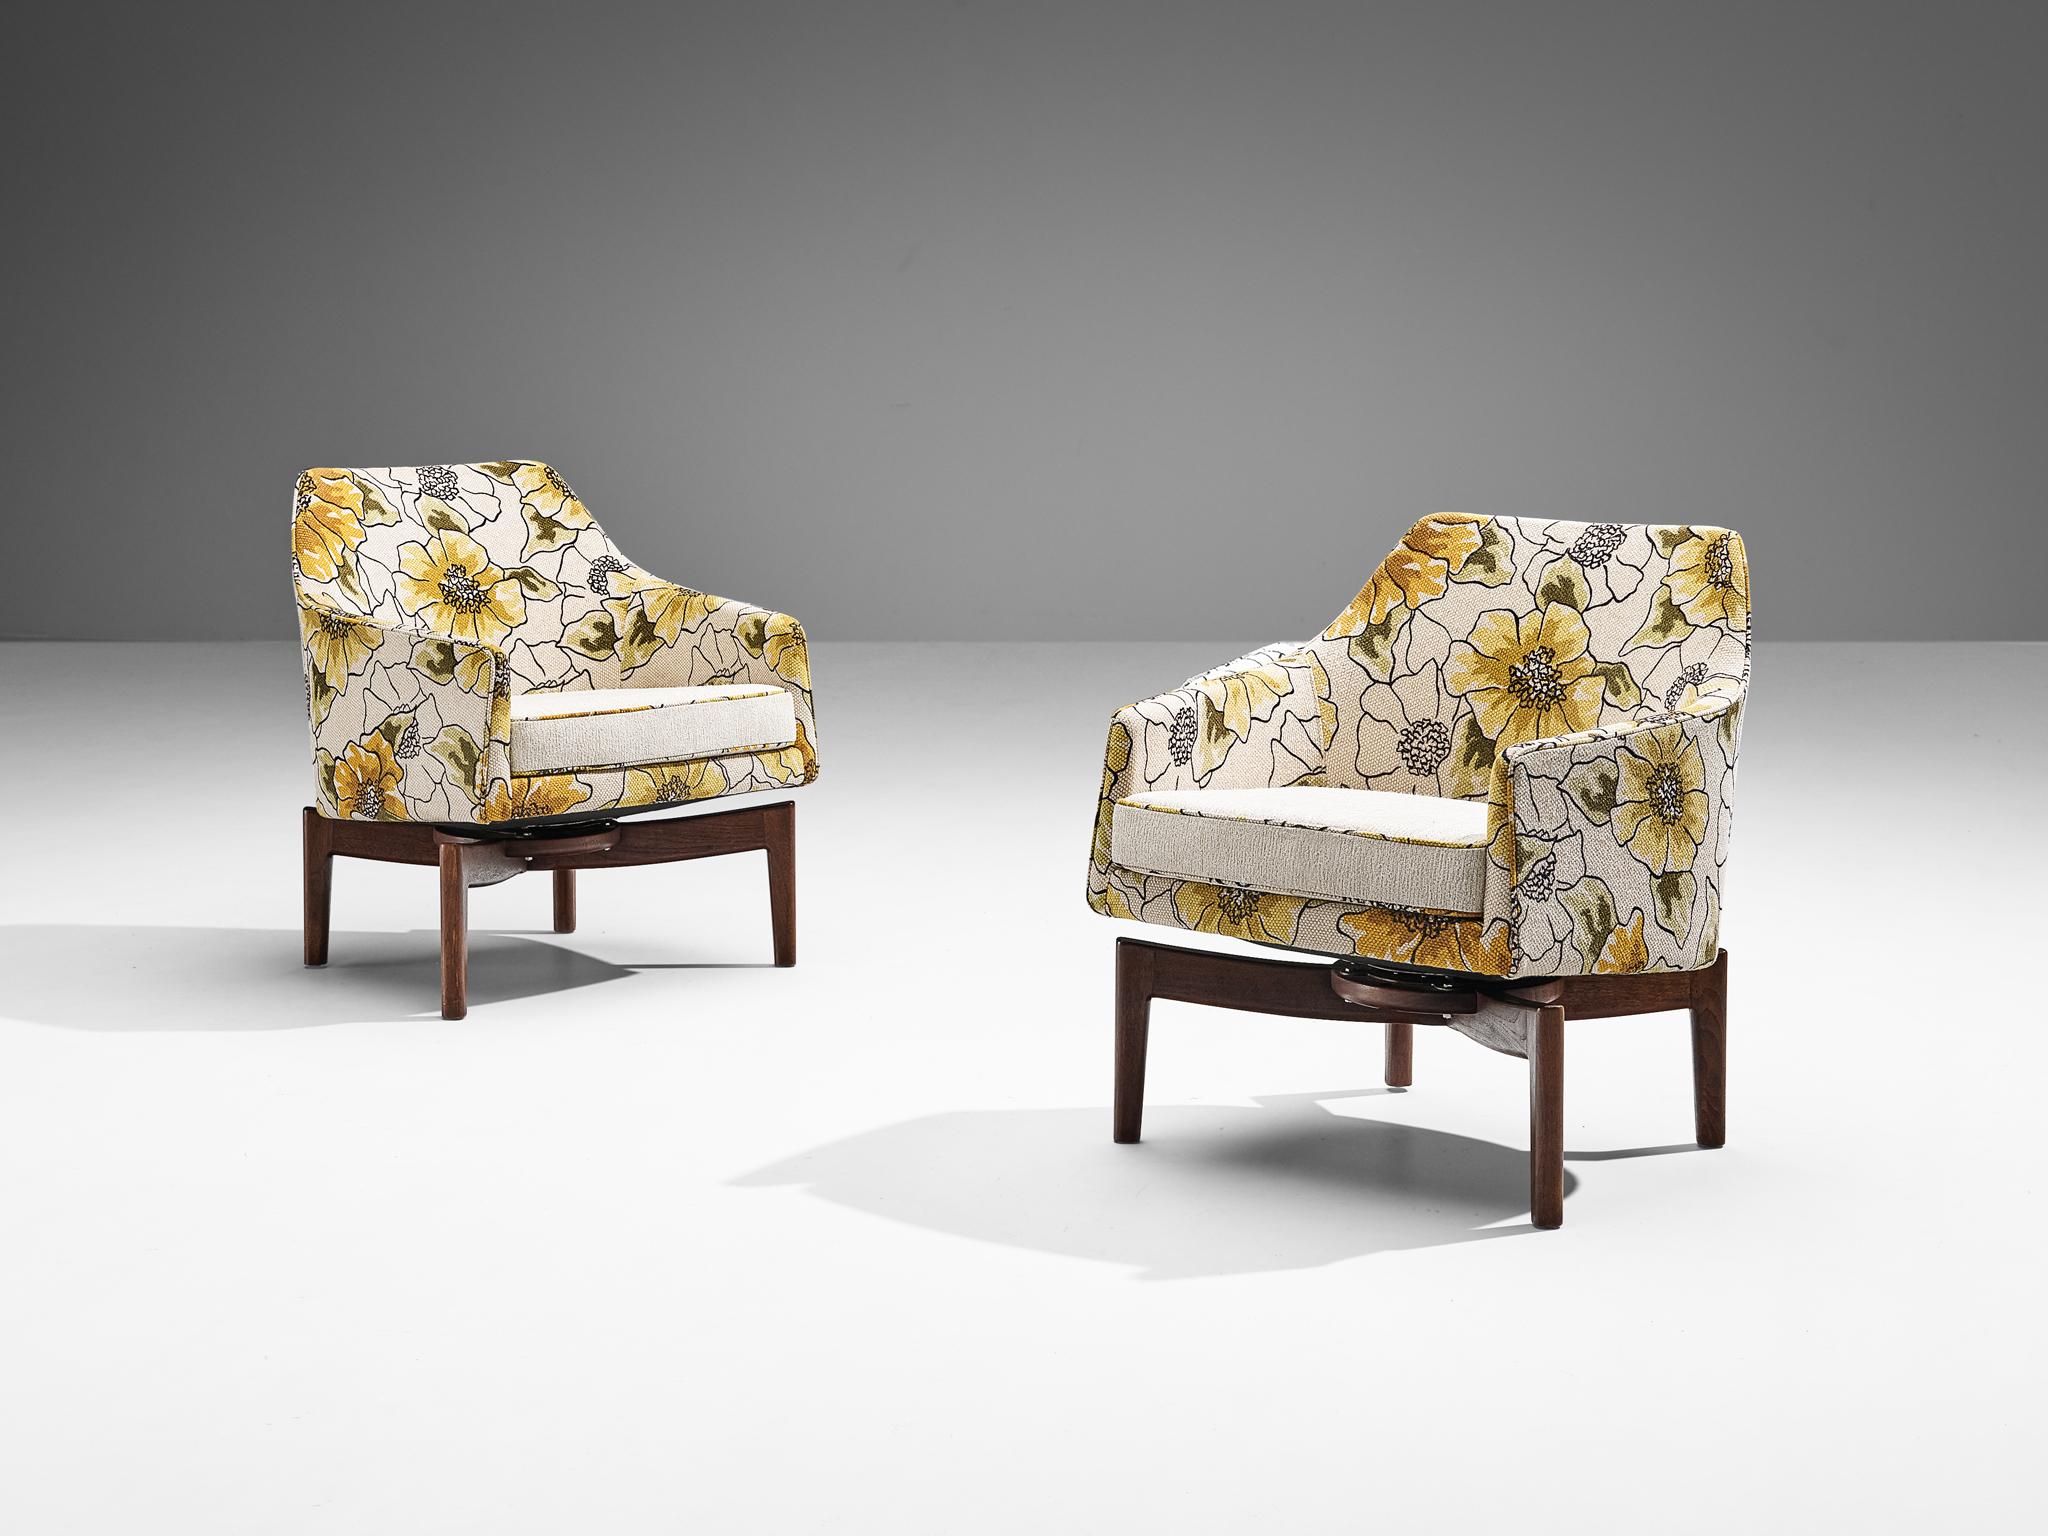 Jens Risom pour Jens Risom Design, paire de chaises longues pivotantes, teck, tissu, États-Unis, années 1960.

Cette extraordinaire paire de chaises longues a été conçue par le designer danois Jens Risom. Il est exécuté dans un cadre en teck et un